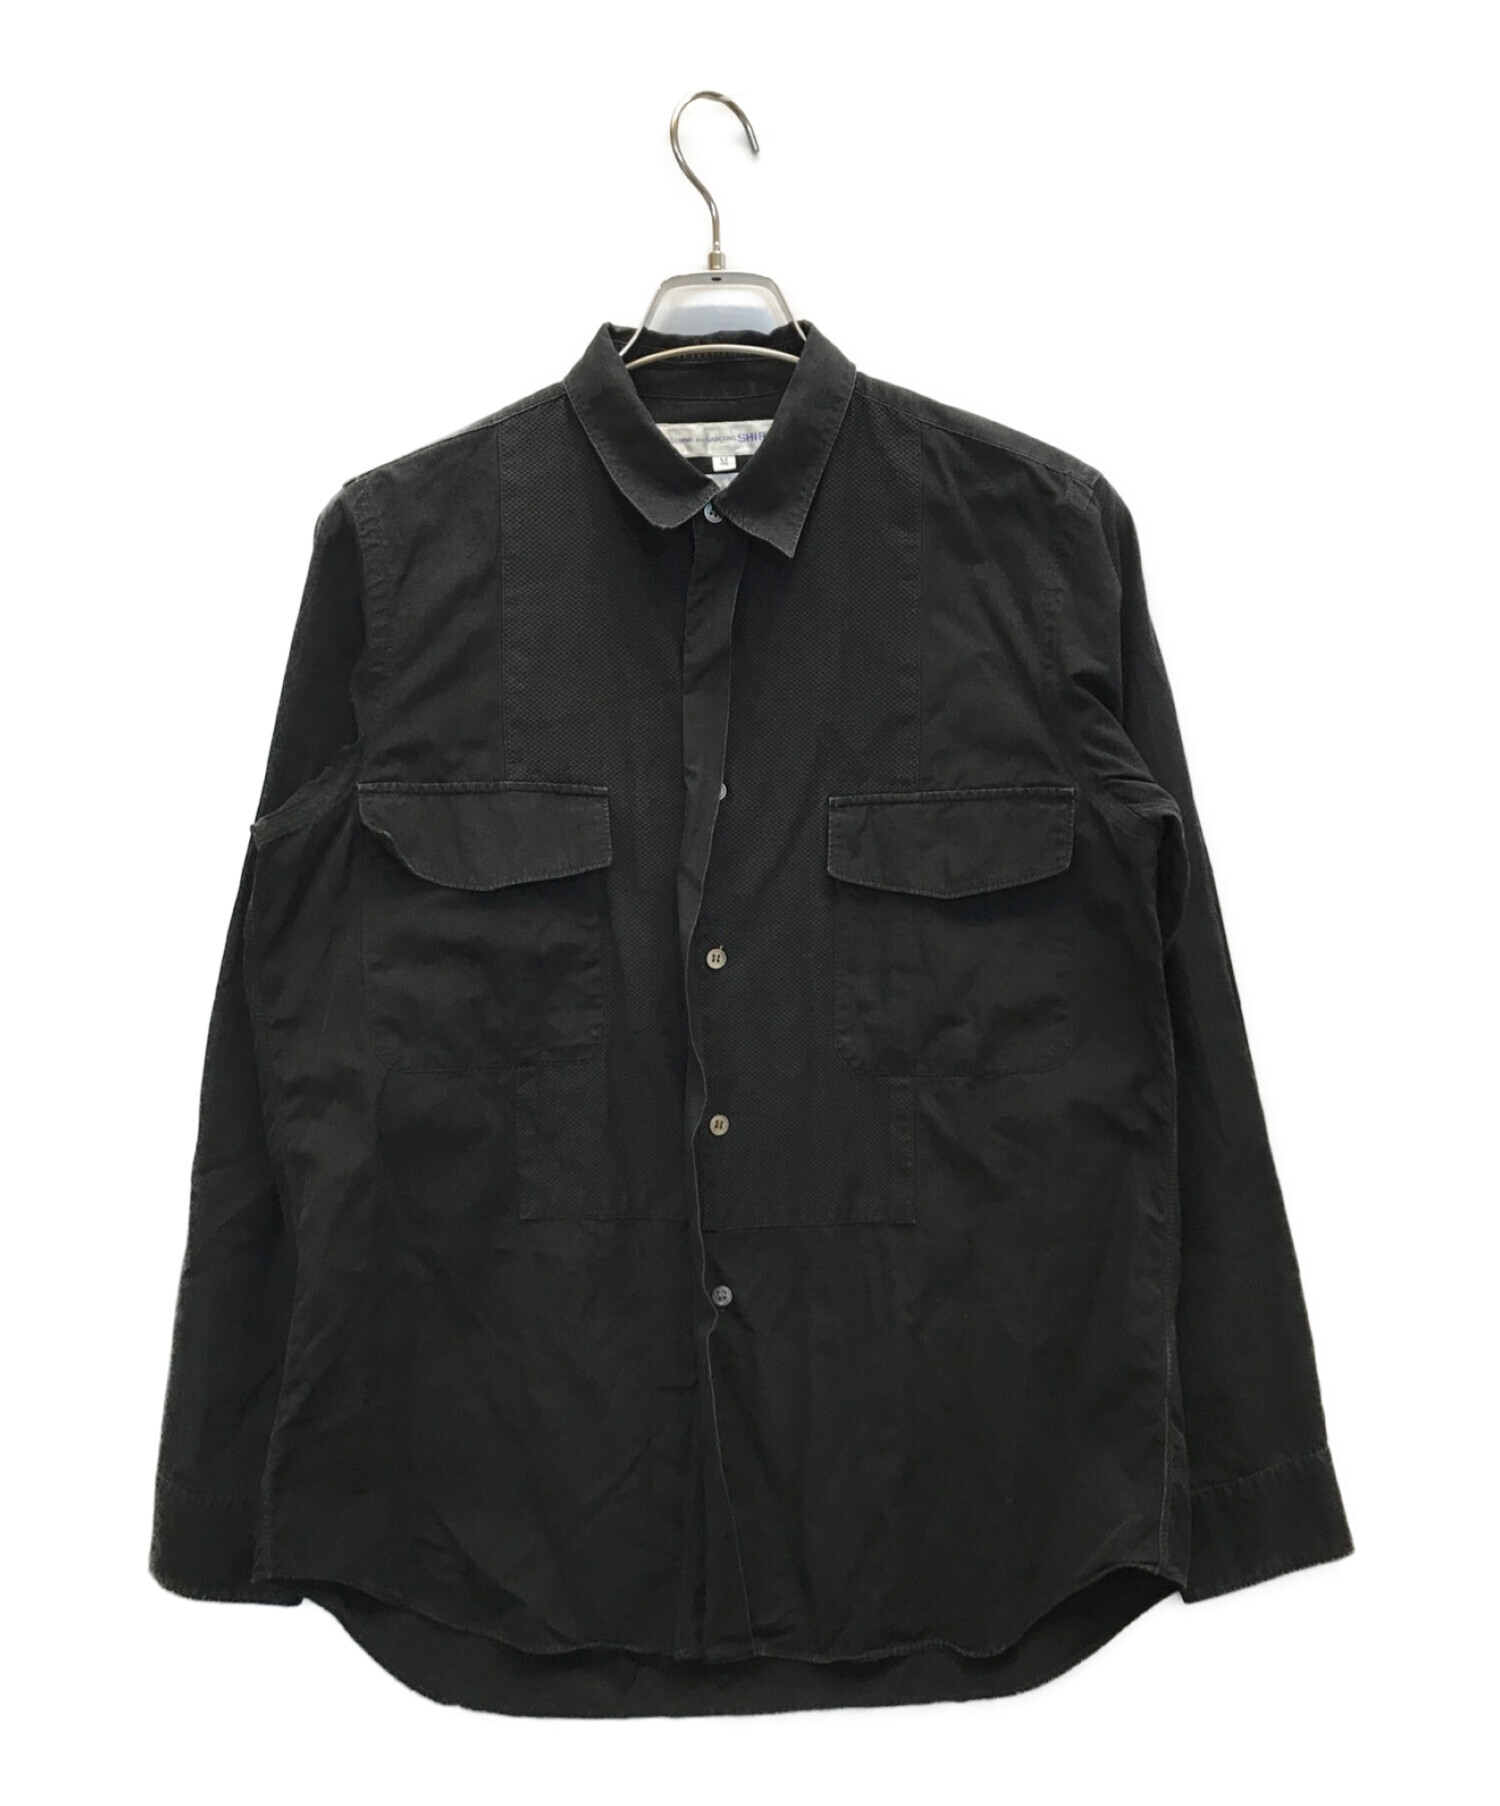 15000円可能ですCOMME des GARCONS SHIRT コムデギャルソンシャツ ブラック